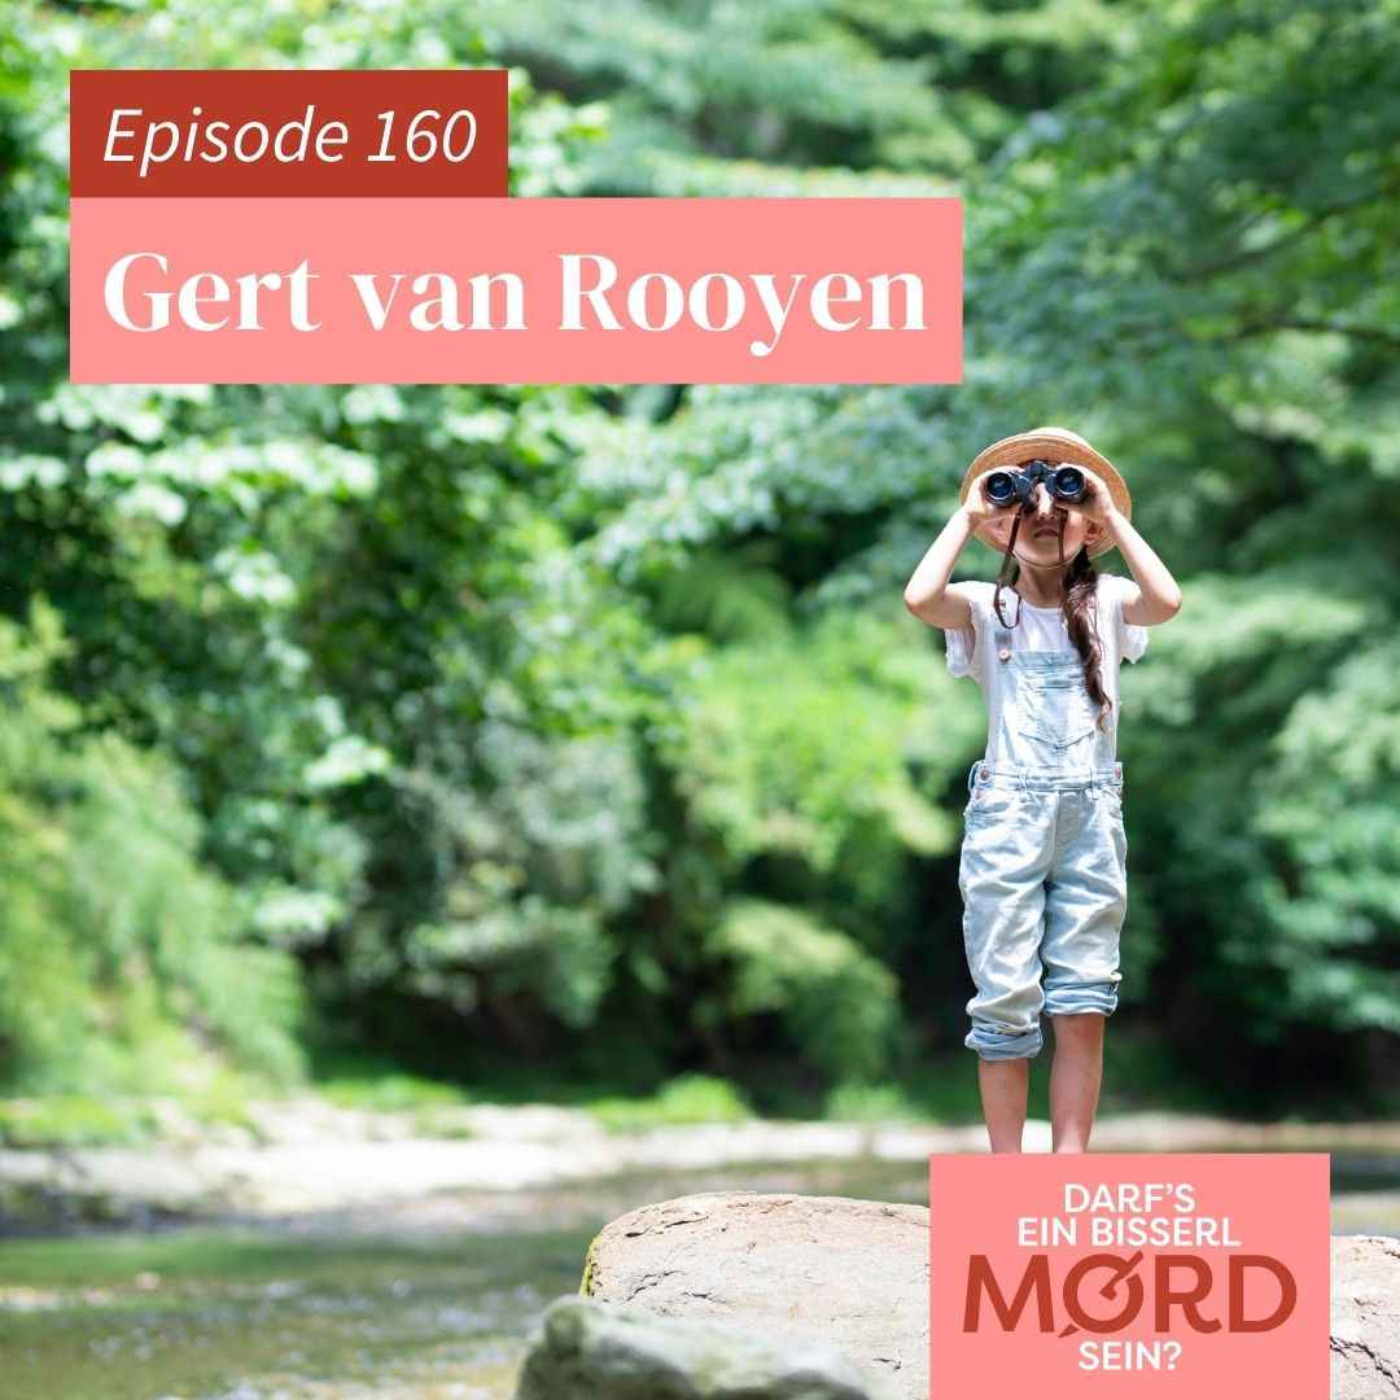 Episode 160: Gert van Rooyen